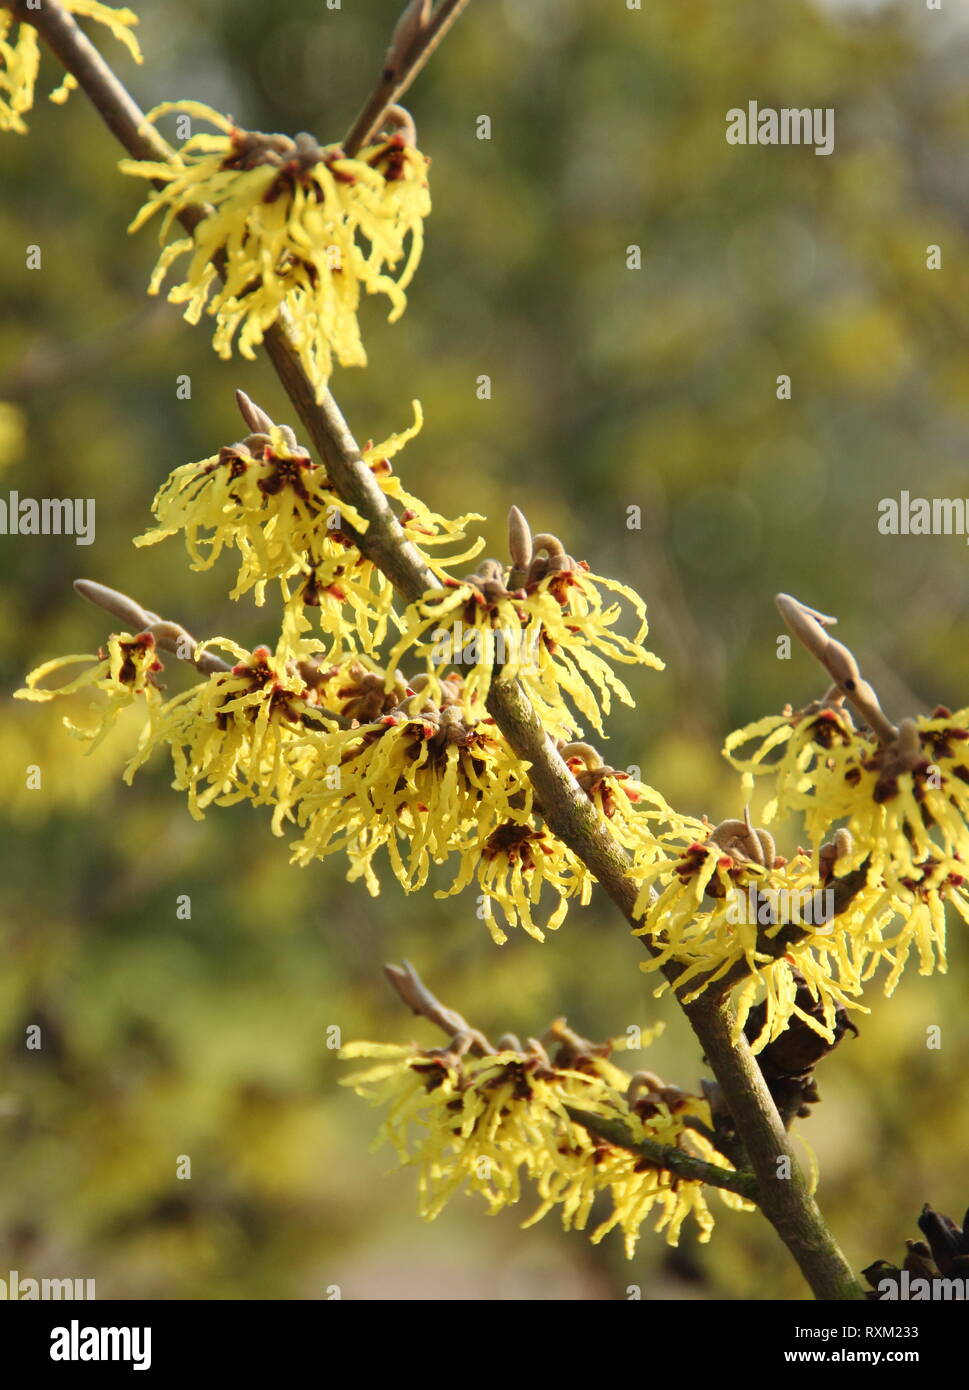 Hamamelis x intermedia 'Westerstede'. Fleurs de l'hamamélis arachnéennes Westerstede' en hiver - Février, UK Banque D'Images